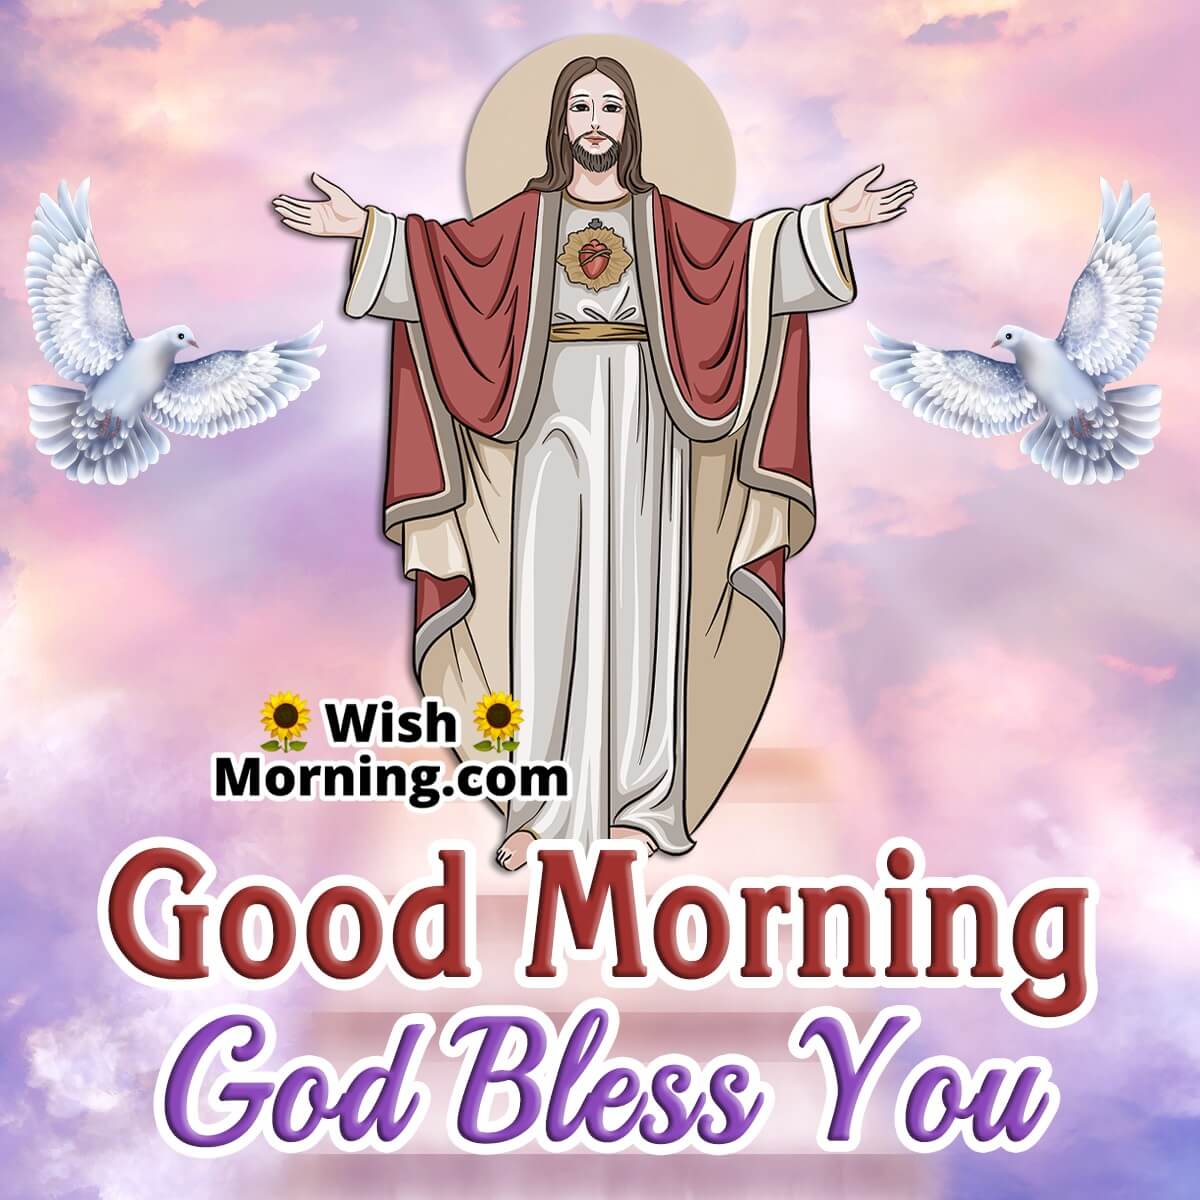 Good Morning Jesus Images - Wish Morning